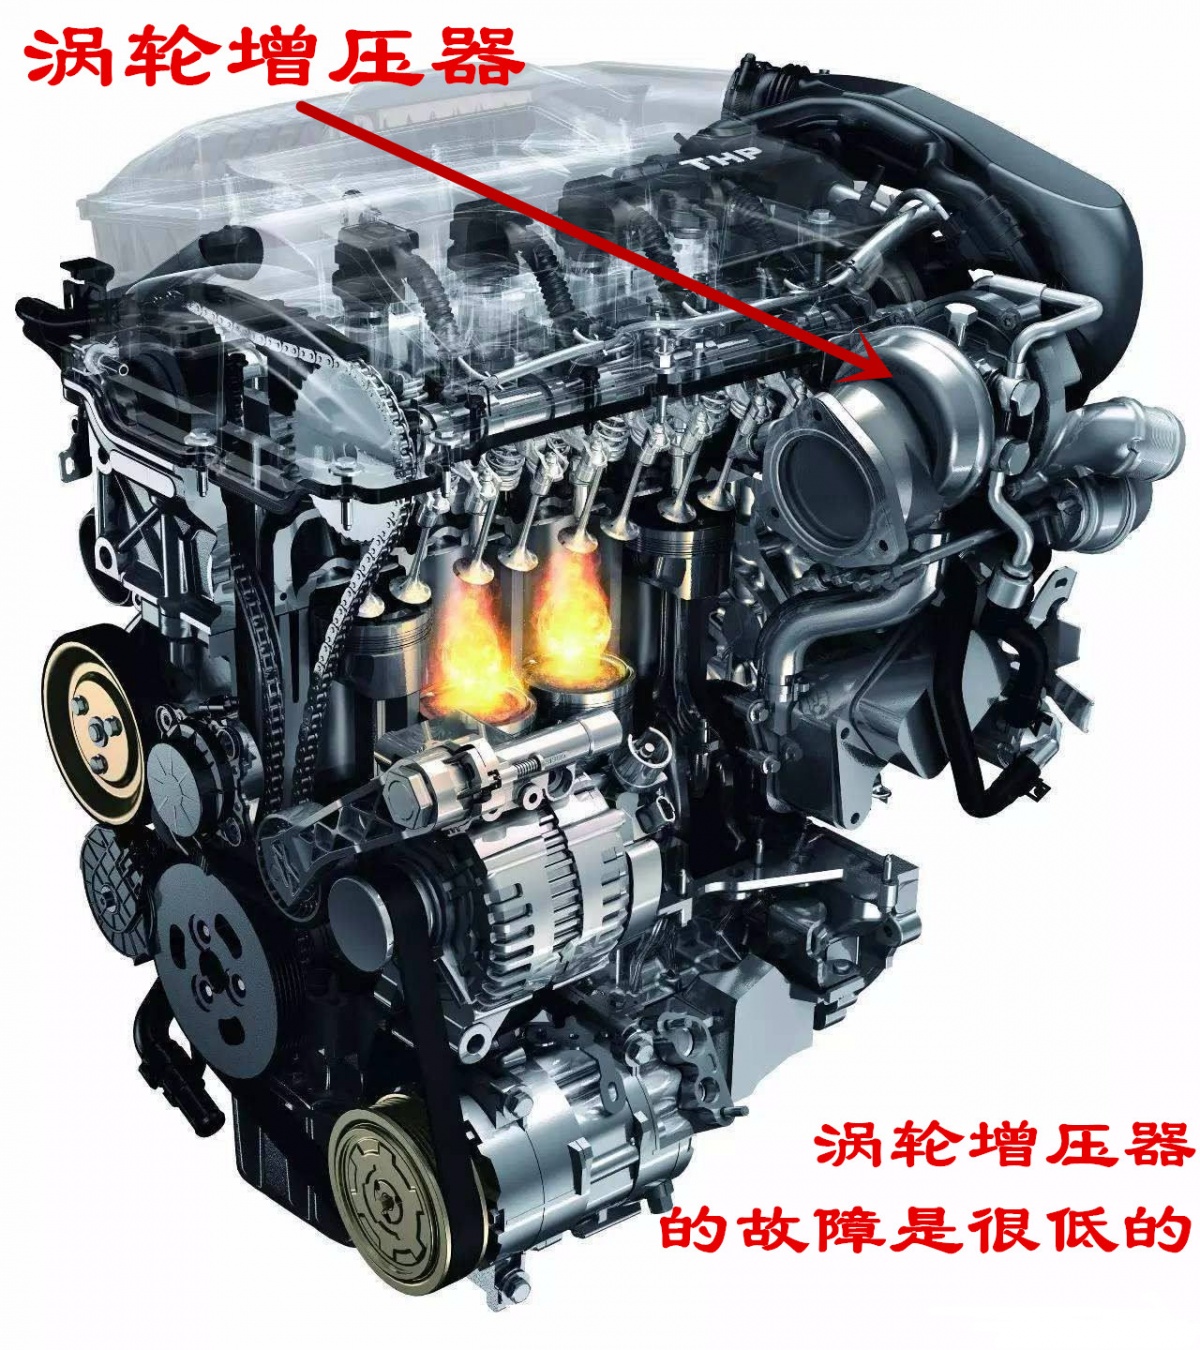 涡轮增压发动机的涡轮坏了可以当做自然吸气的车来开吗